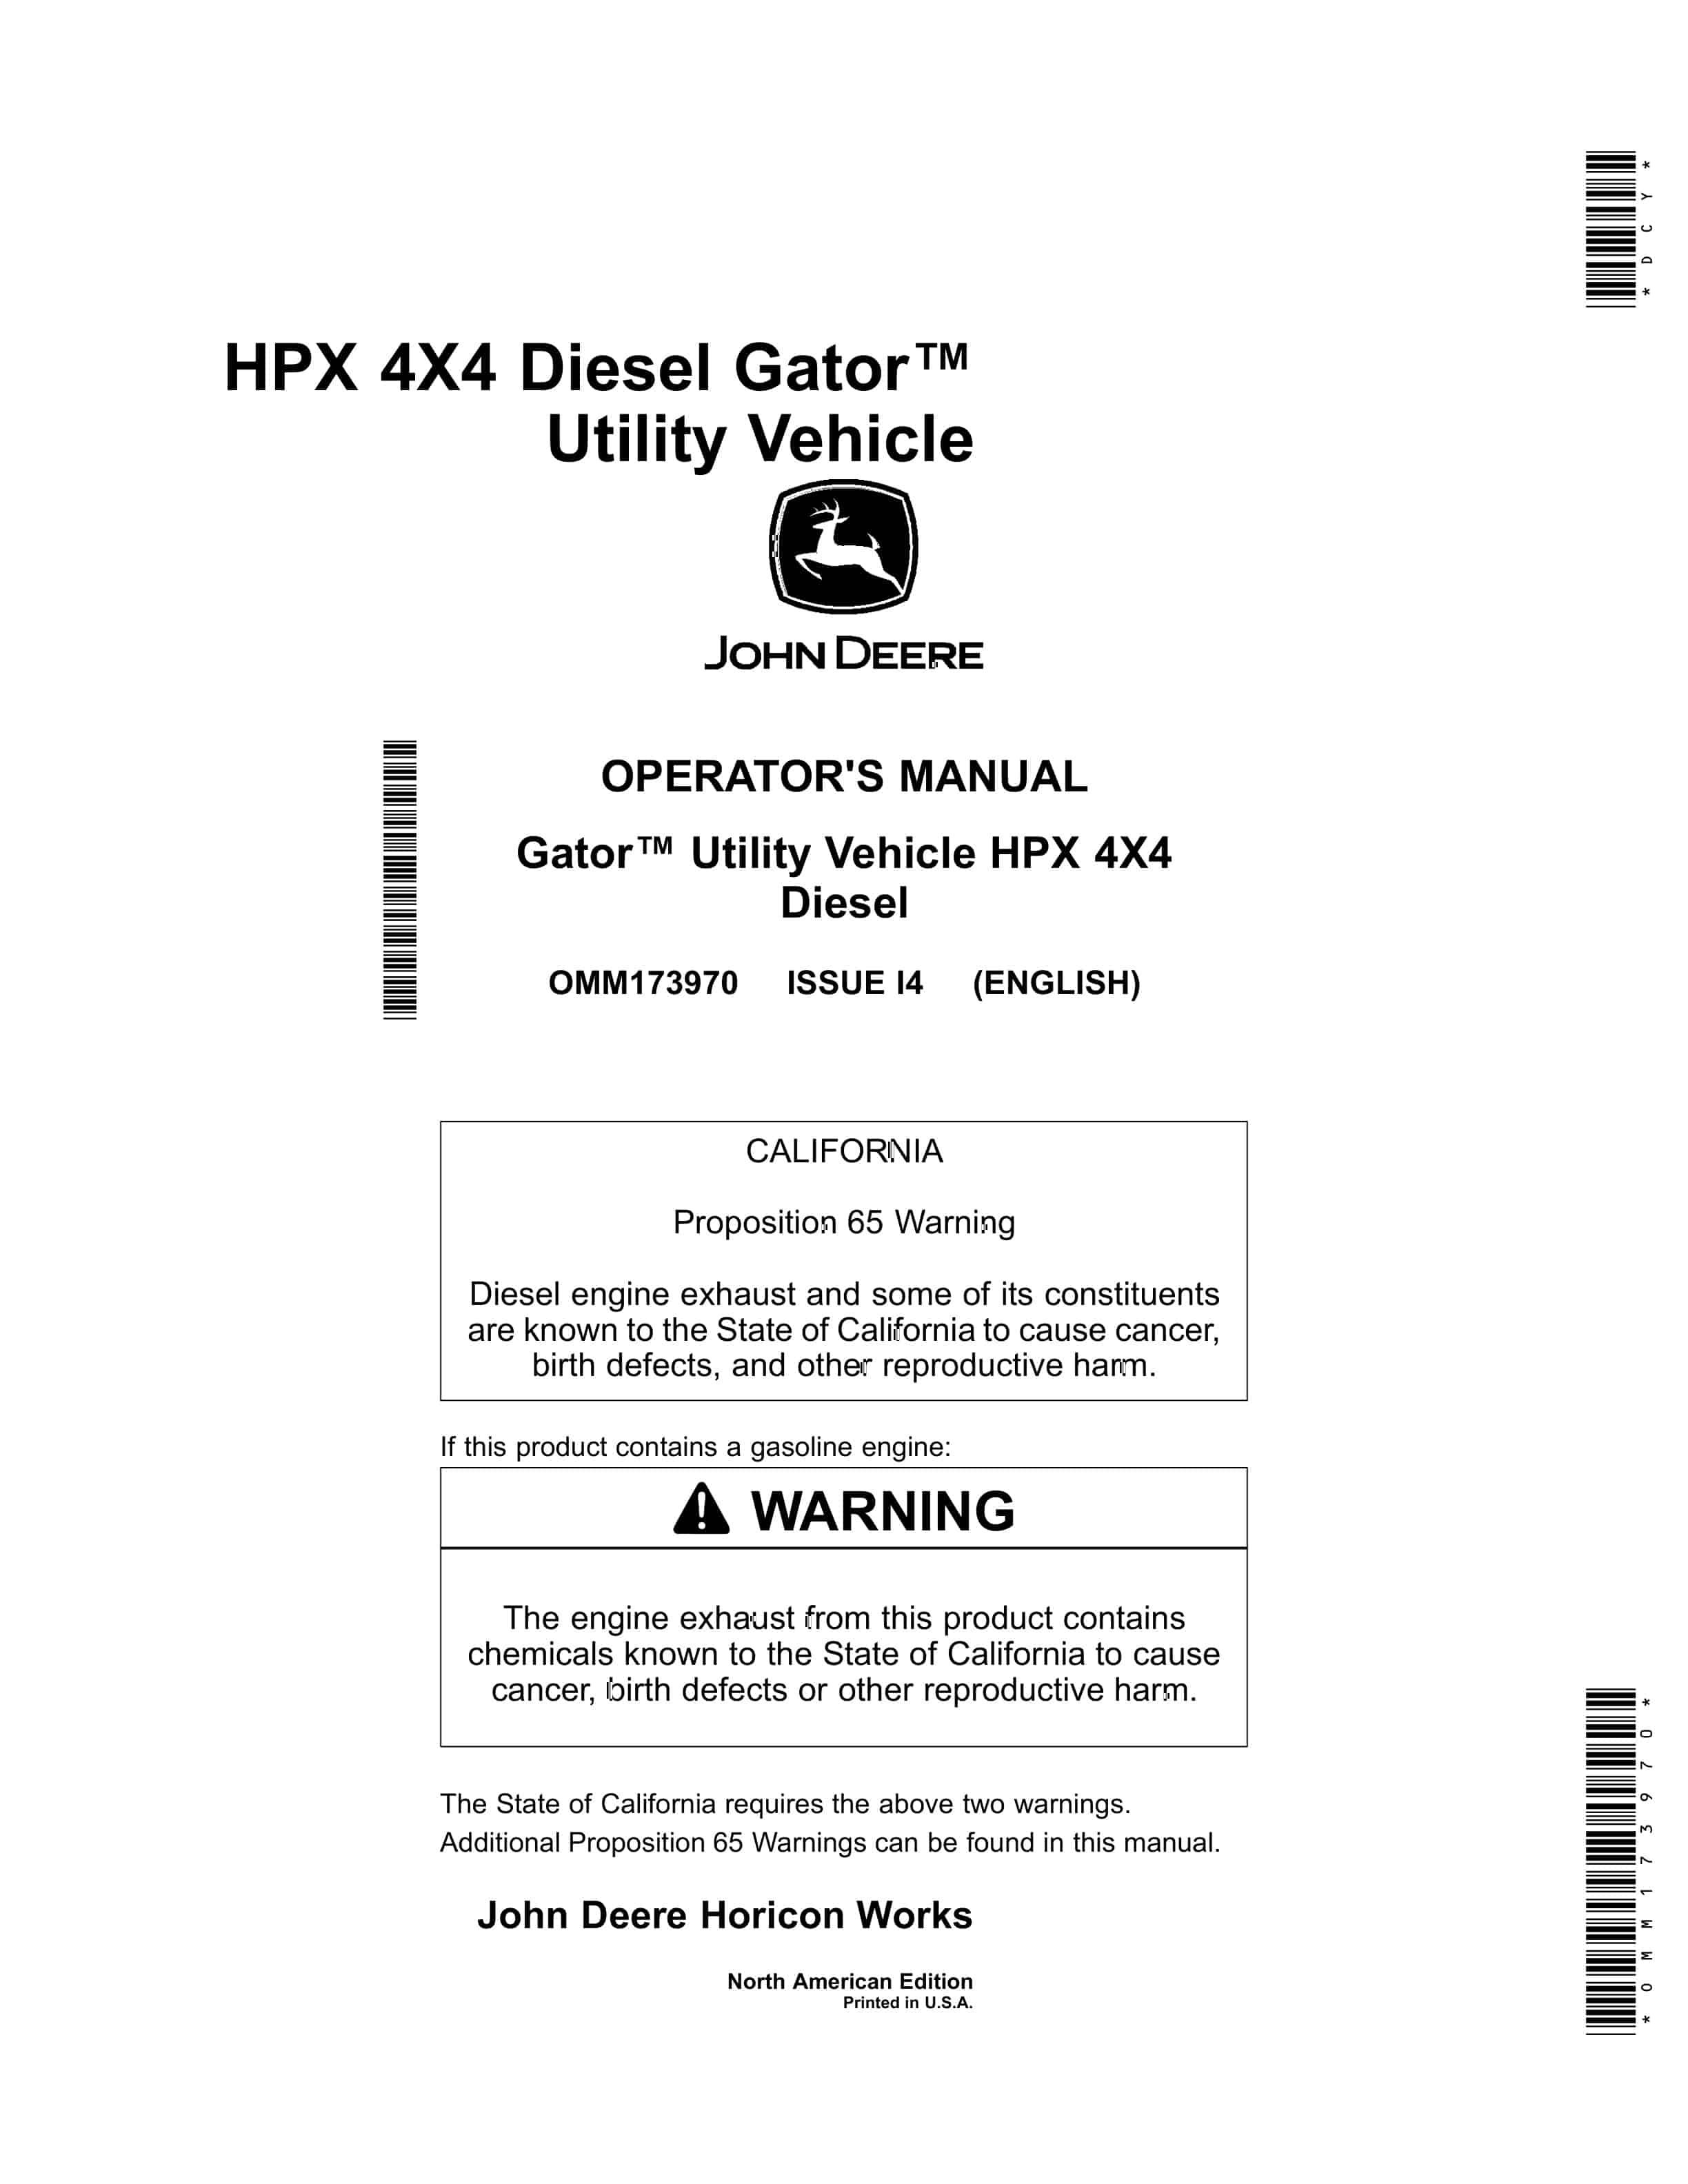 John Deere HPX 4X4 Diesel Gator Utility Vehicles Operator Manual OMM173970 1